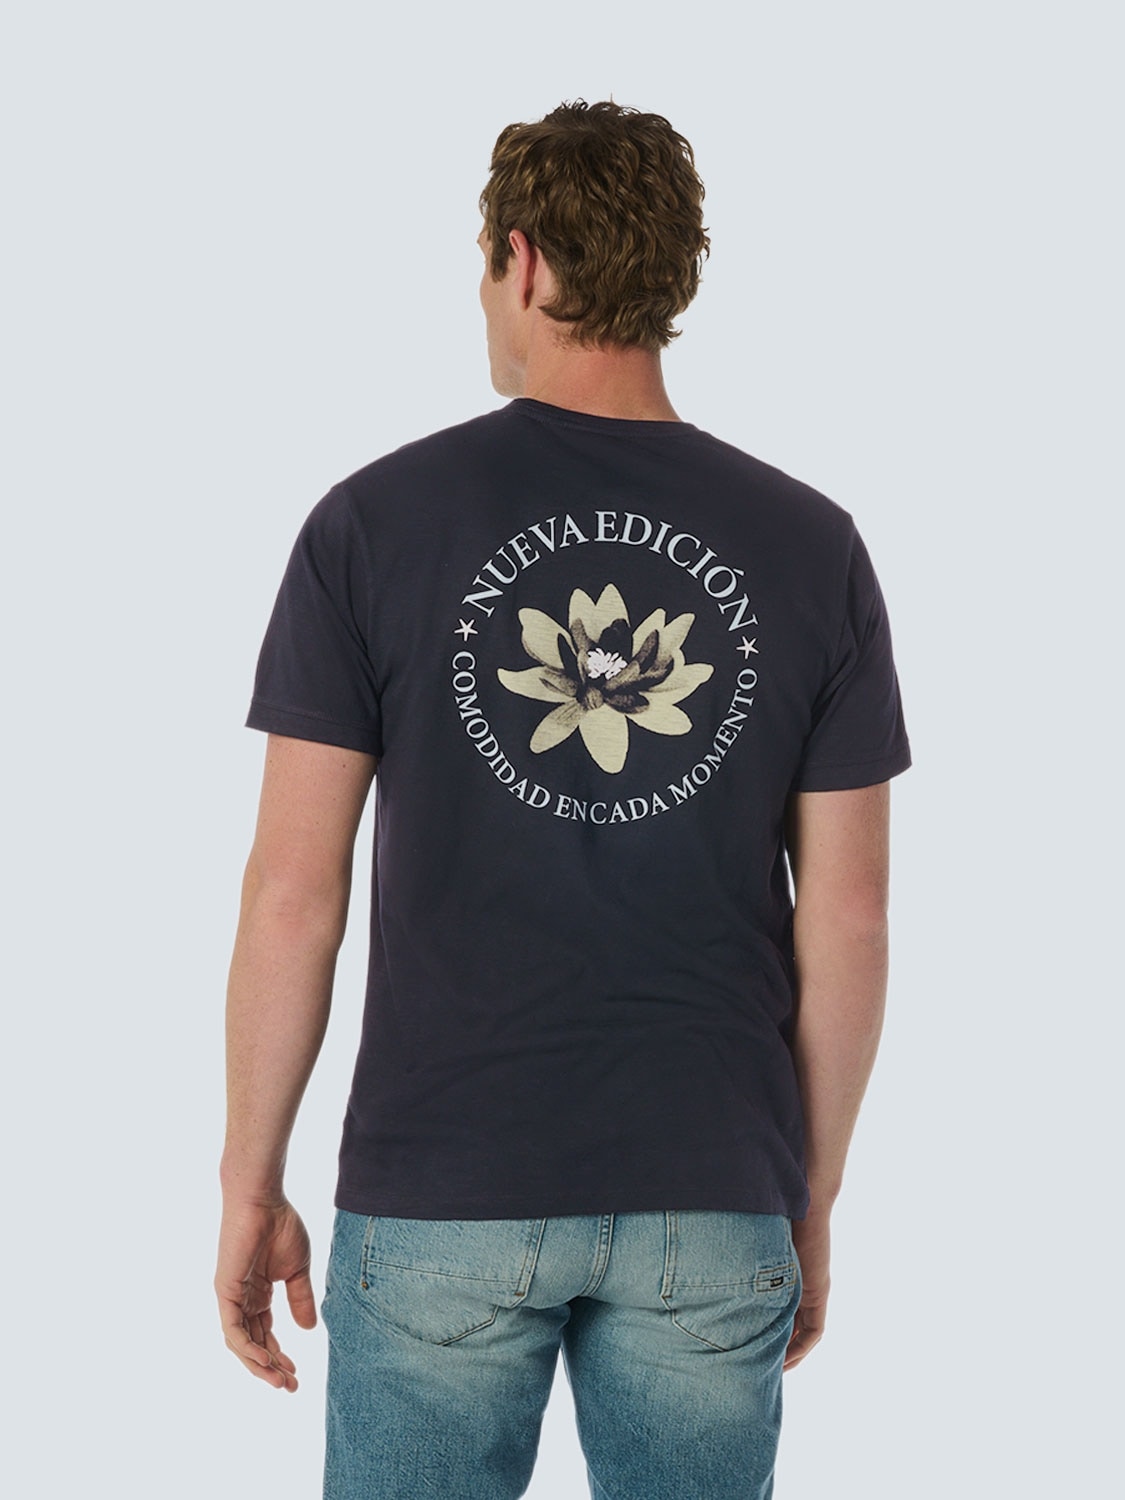 NO EXCESS T-Shirt, mit Front- und Backprint